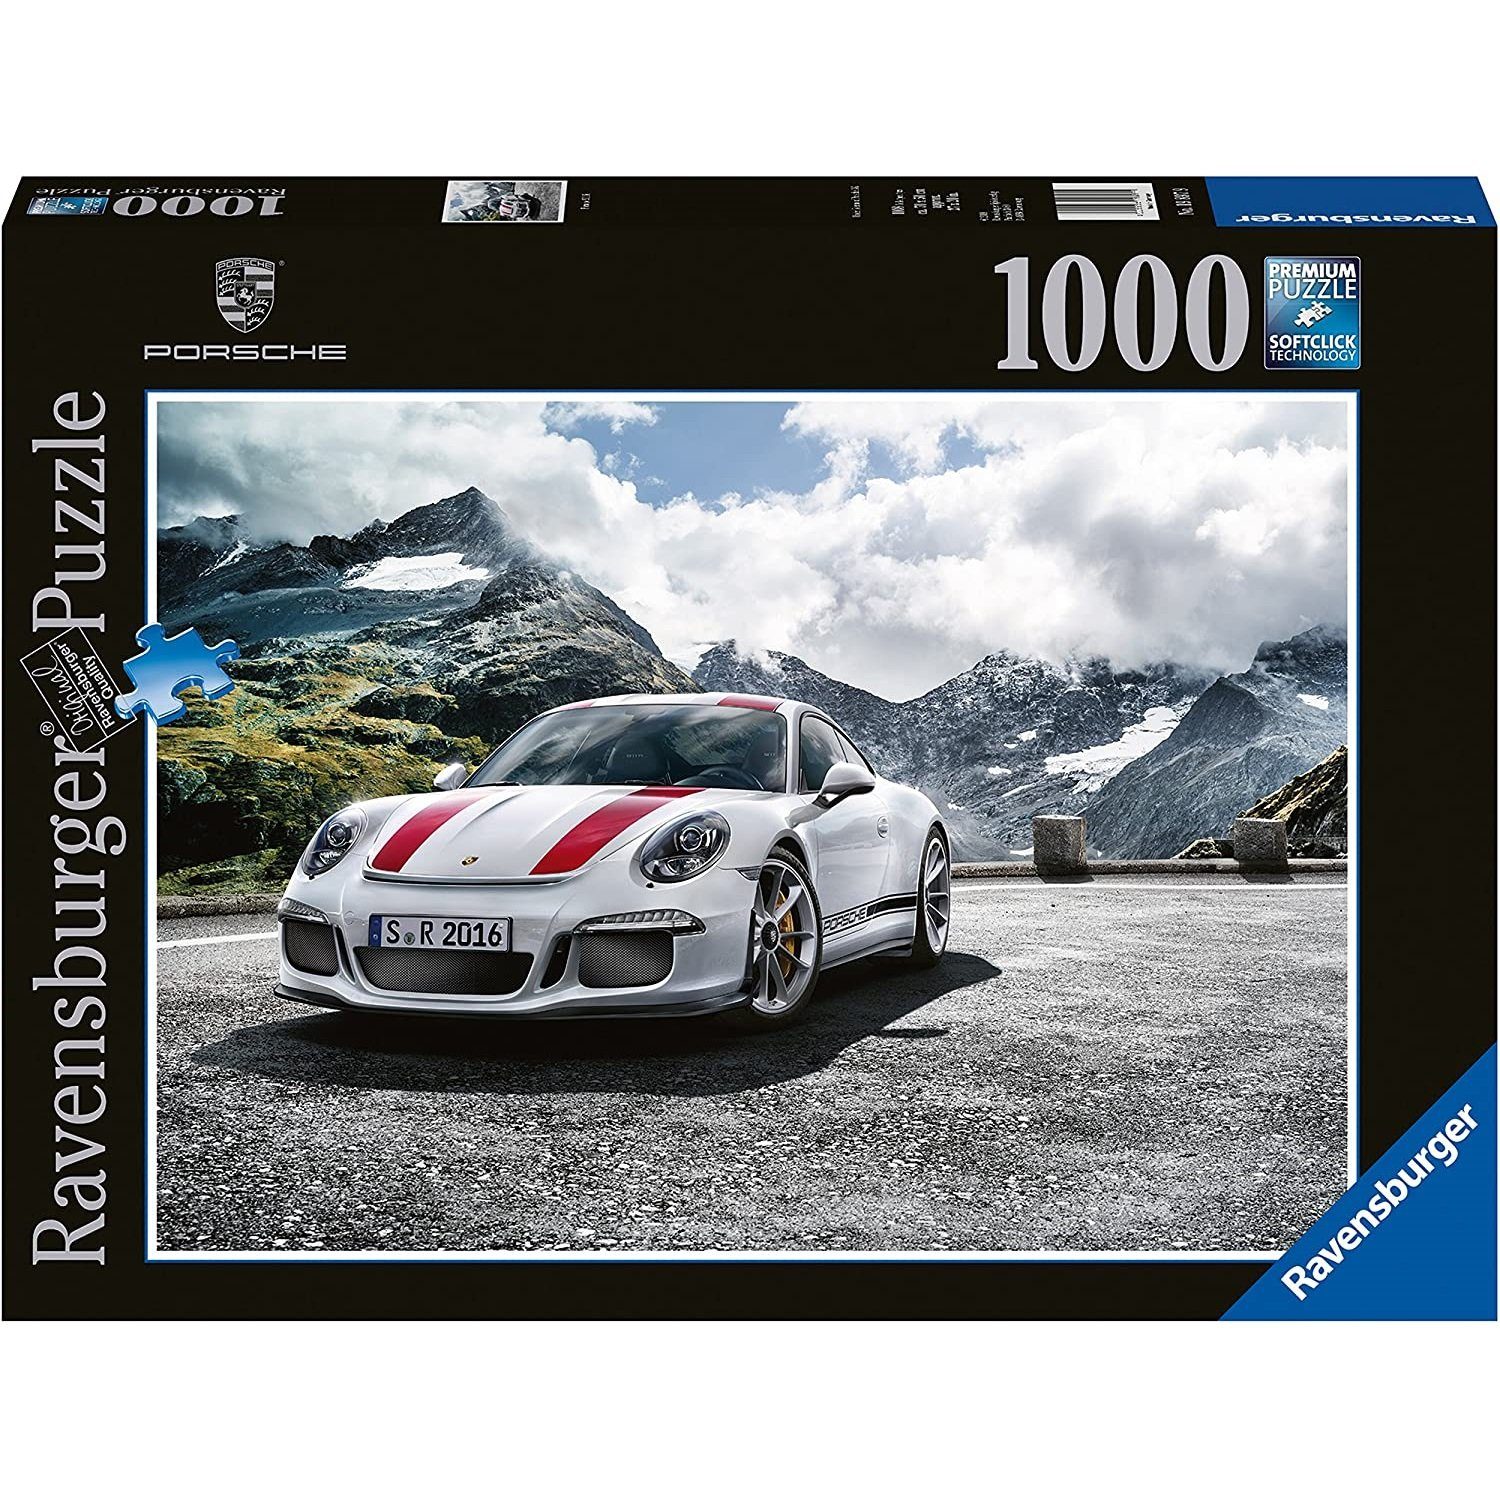 Porsche Puzzle R, Ravensburger Ravensburger 1000 Puzzleteile 1000 Puzzle, Teile 911 -